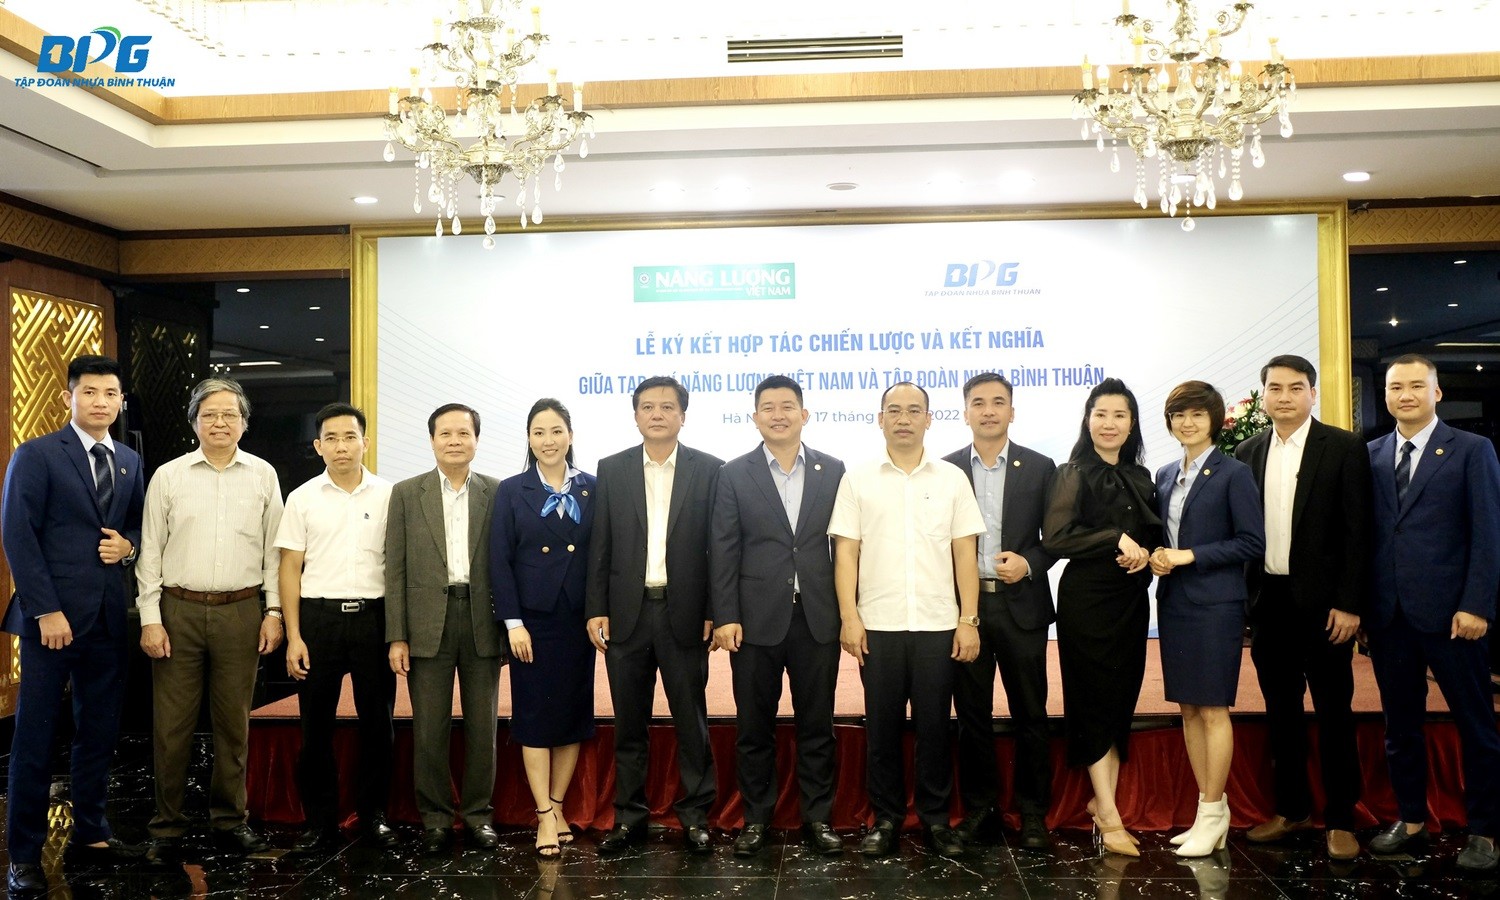 Tập đoàn Nhựa Bình Thuận và Tạp chí Năng lượng Việt Nam ký kết hợp tác chiến lược